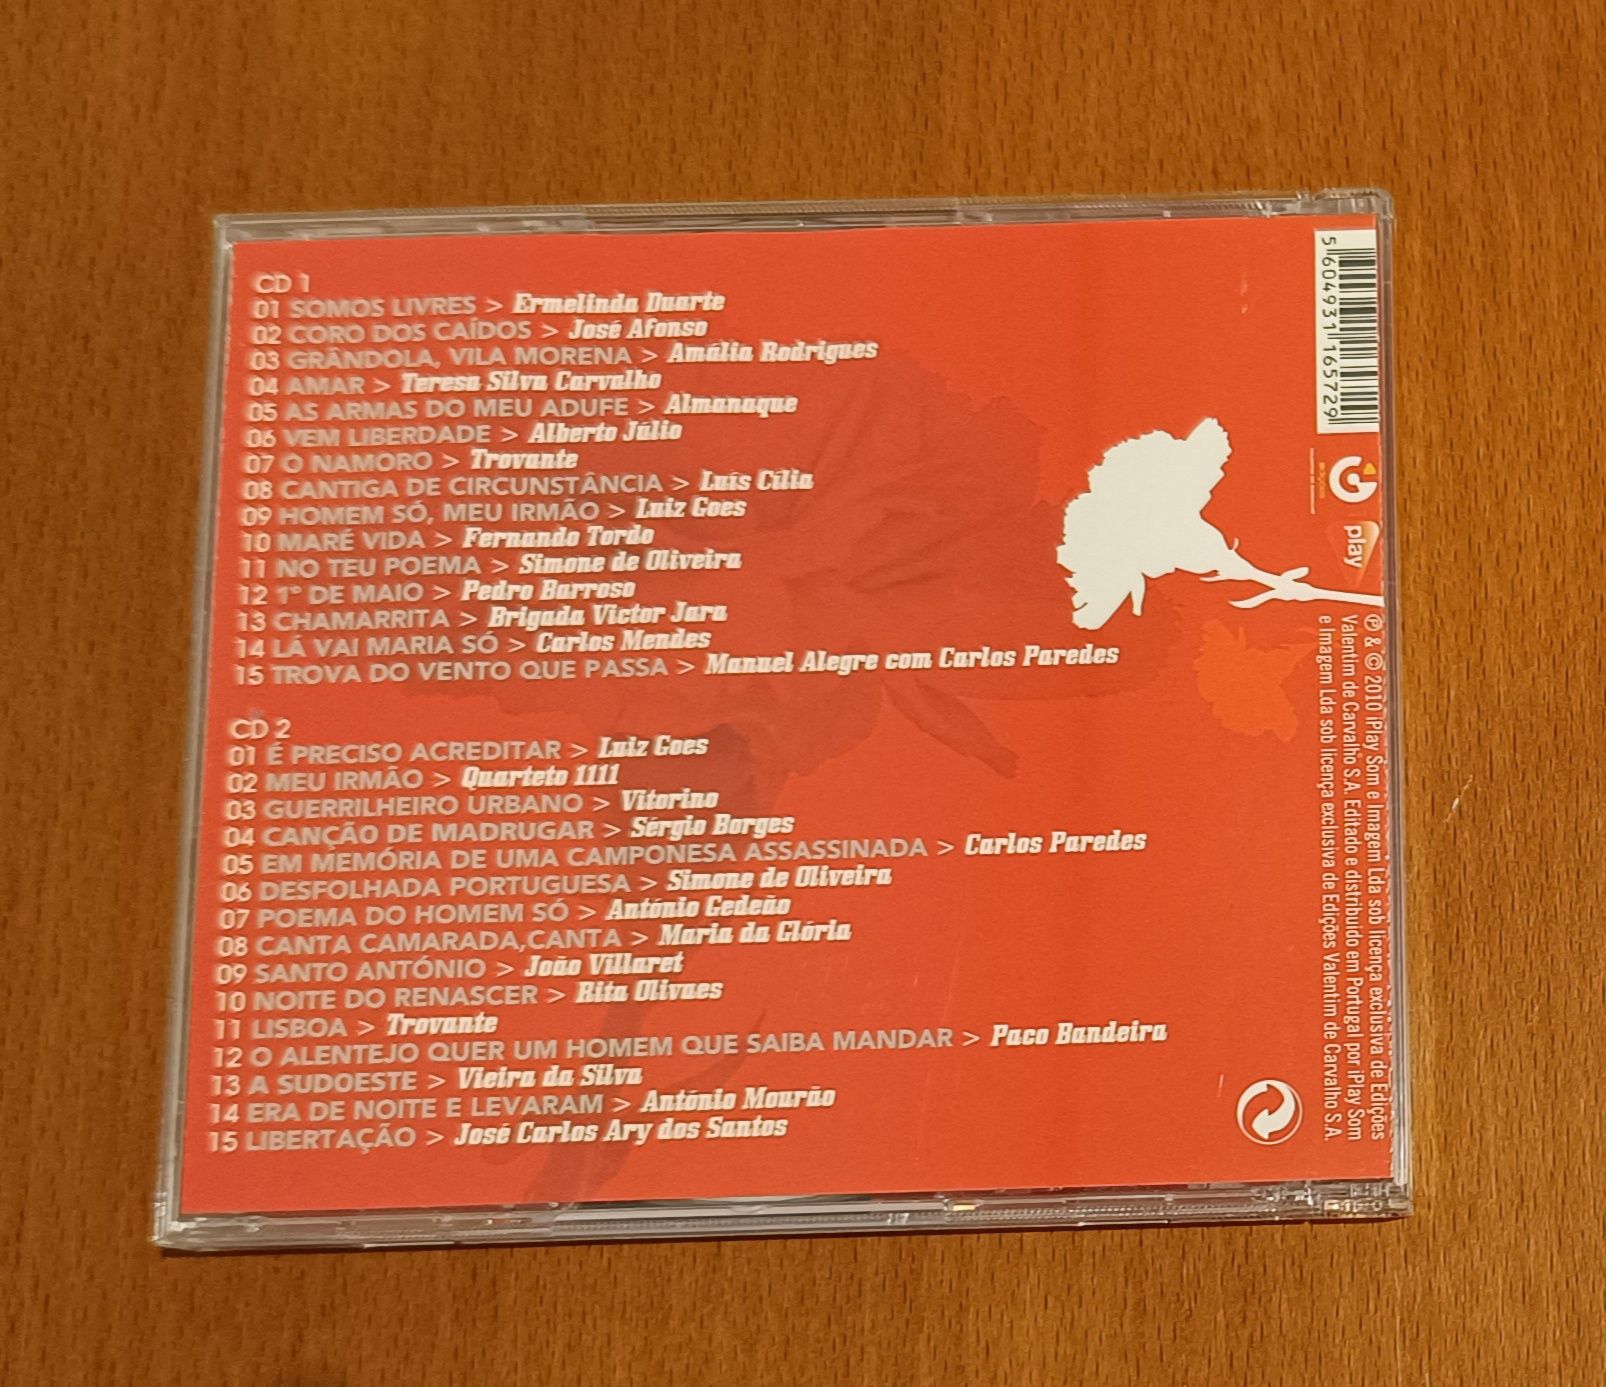 CDs Aromas de Abril e Gotan Project – The Original CD Box Set.